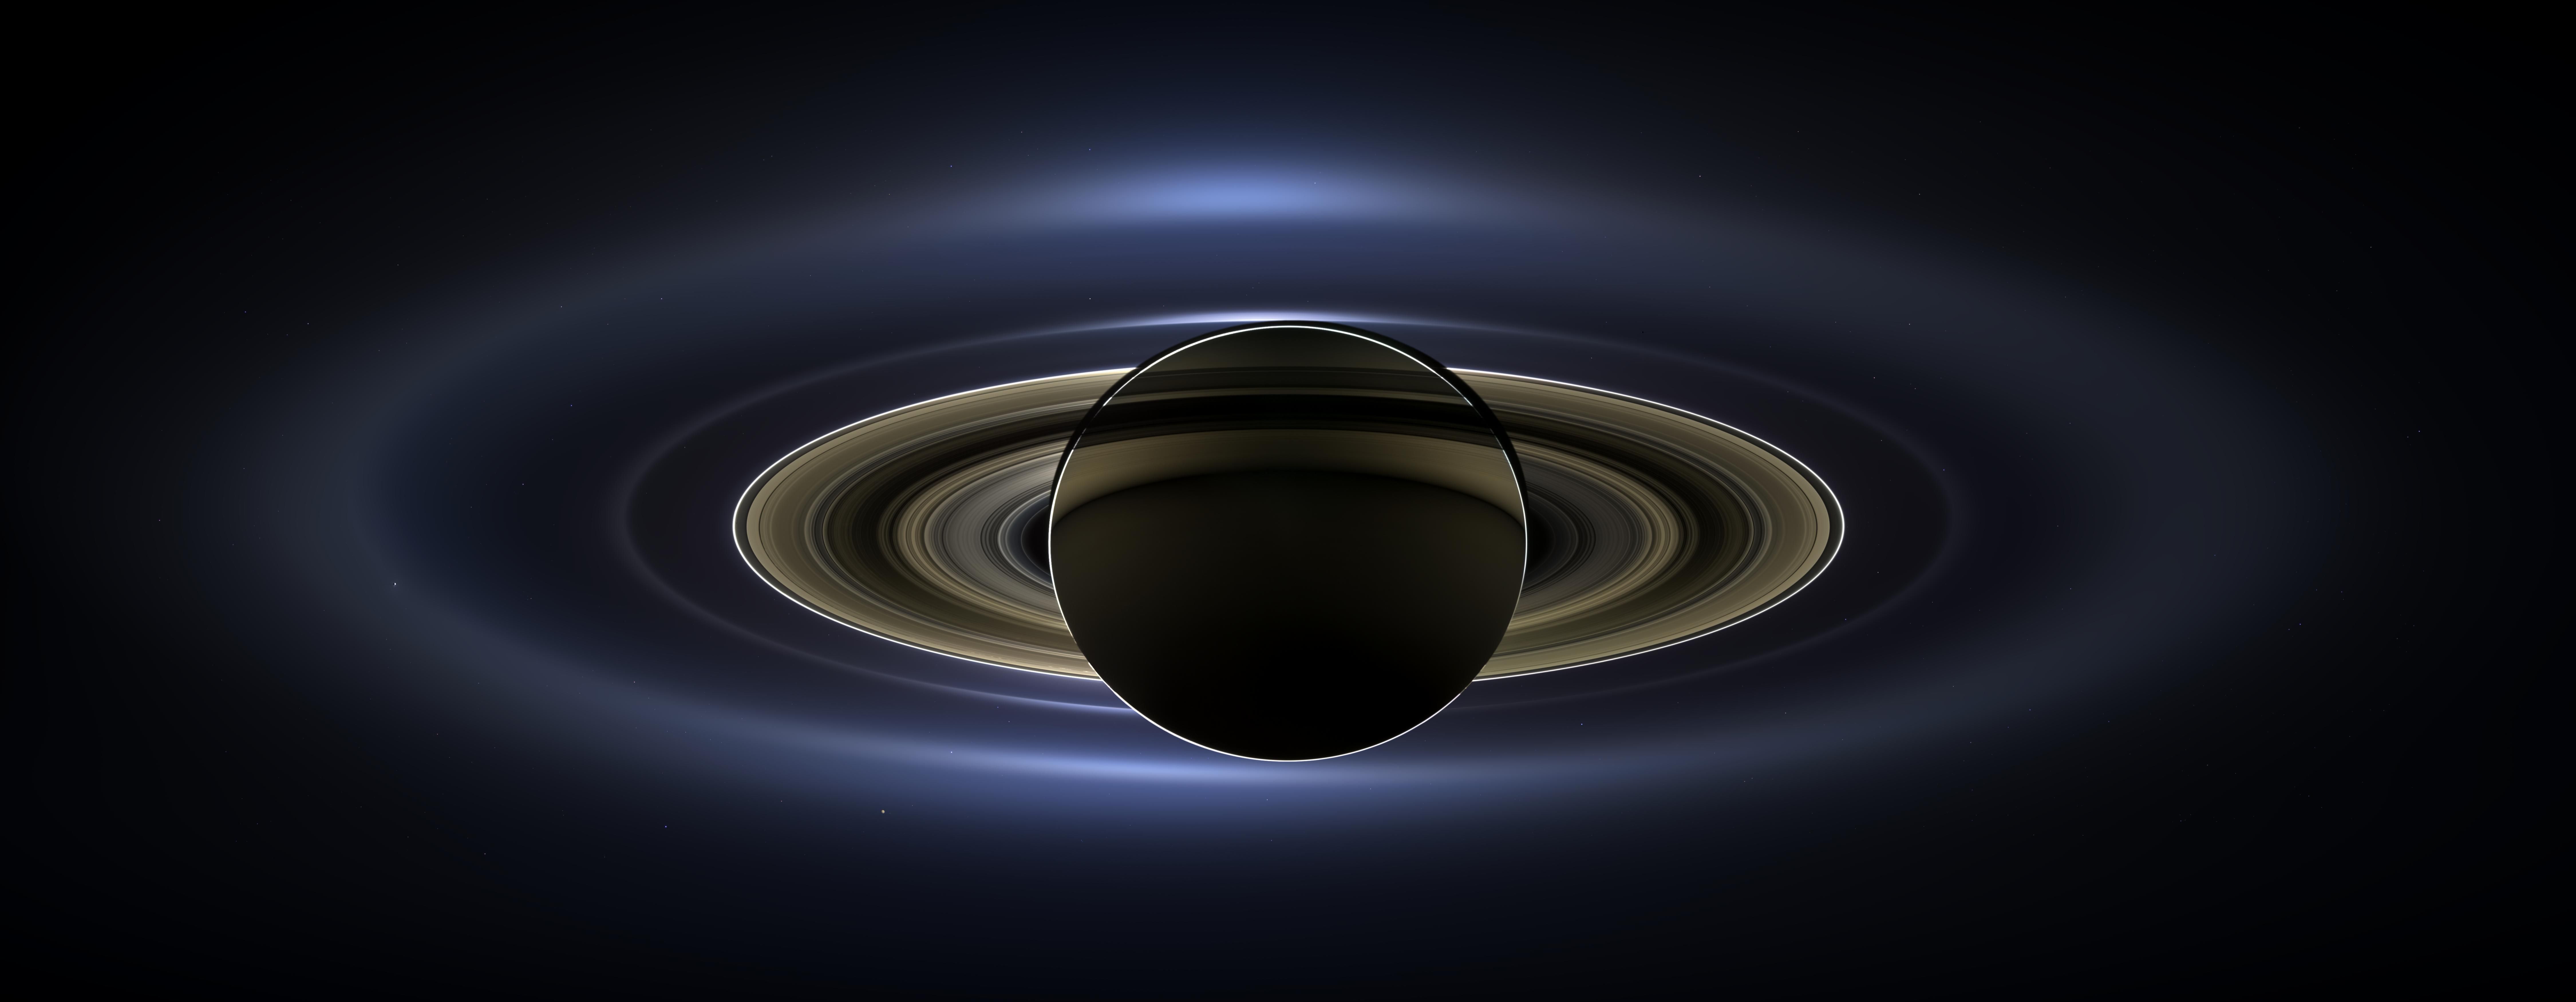 NASA Saturn Wallpaper Free NASA Saturn Background